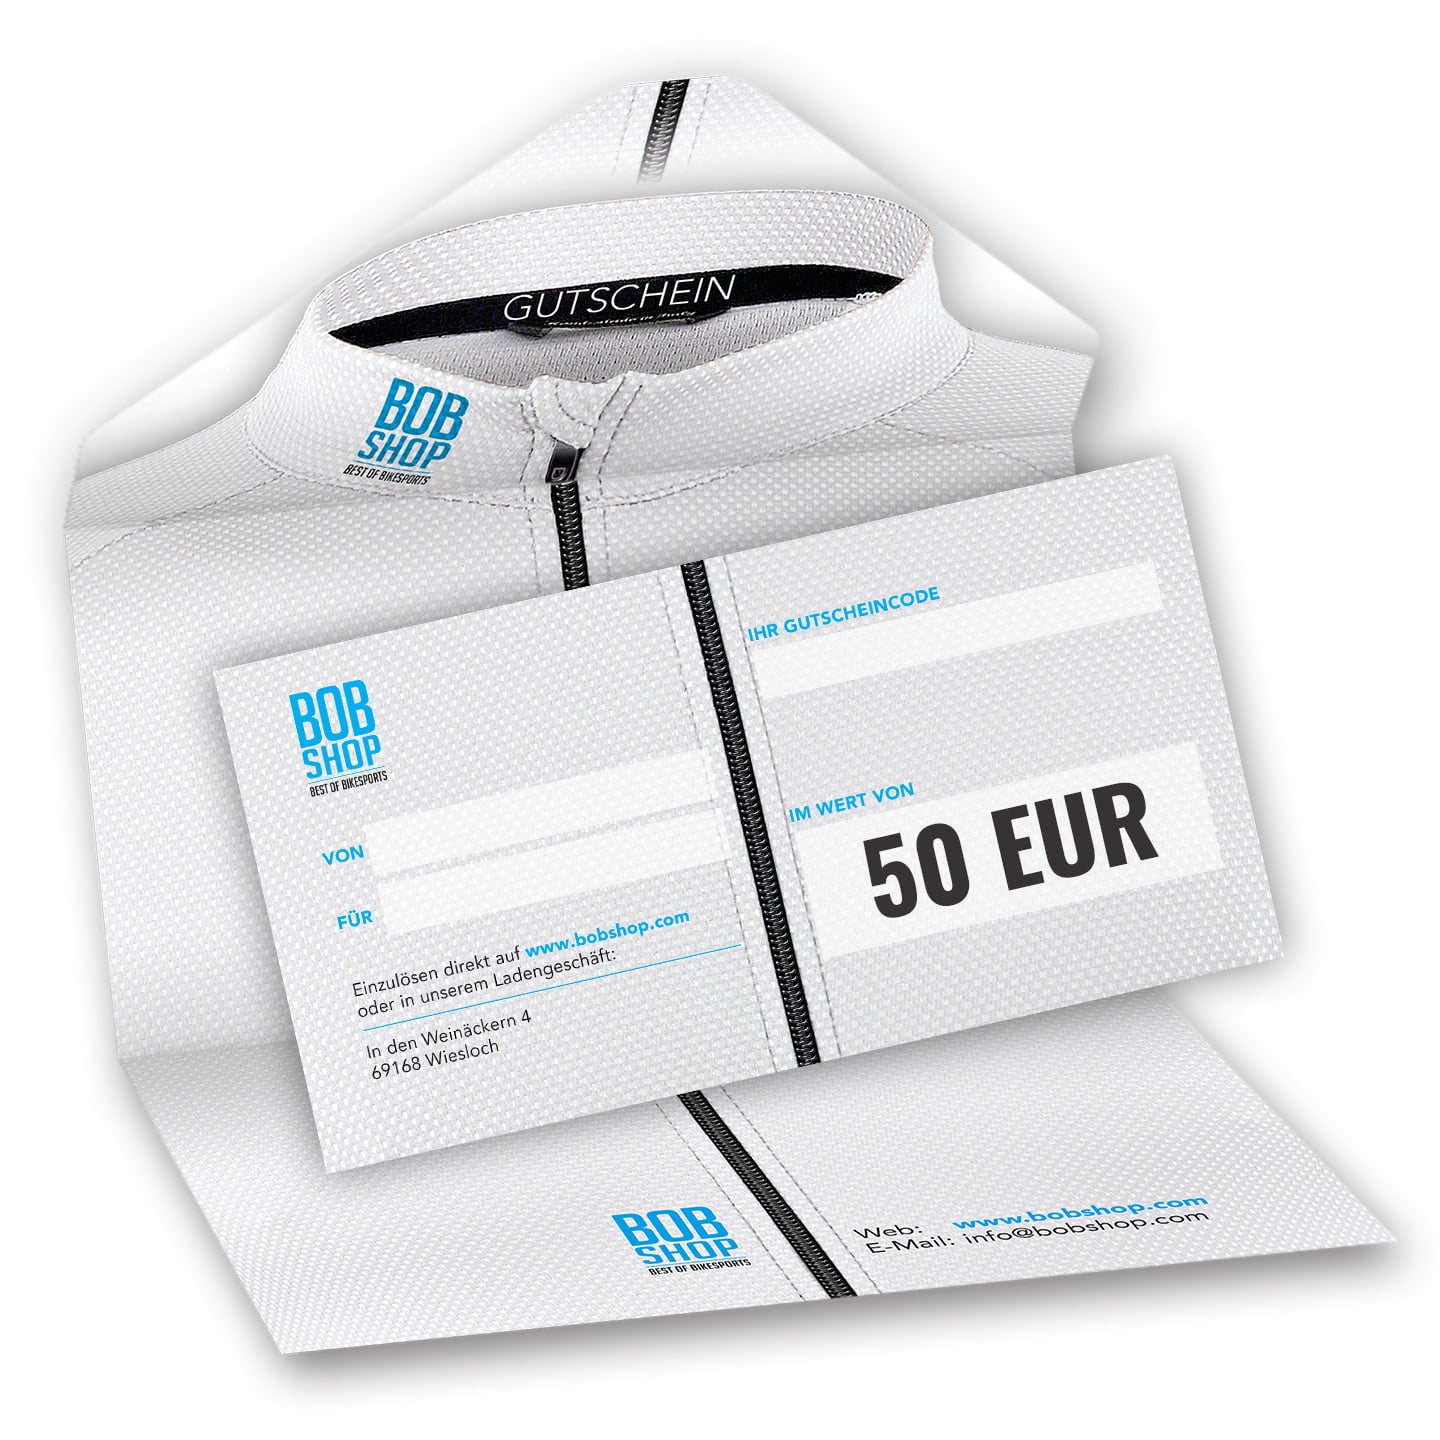 Bobshop gift voucher 50 EUR